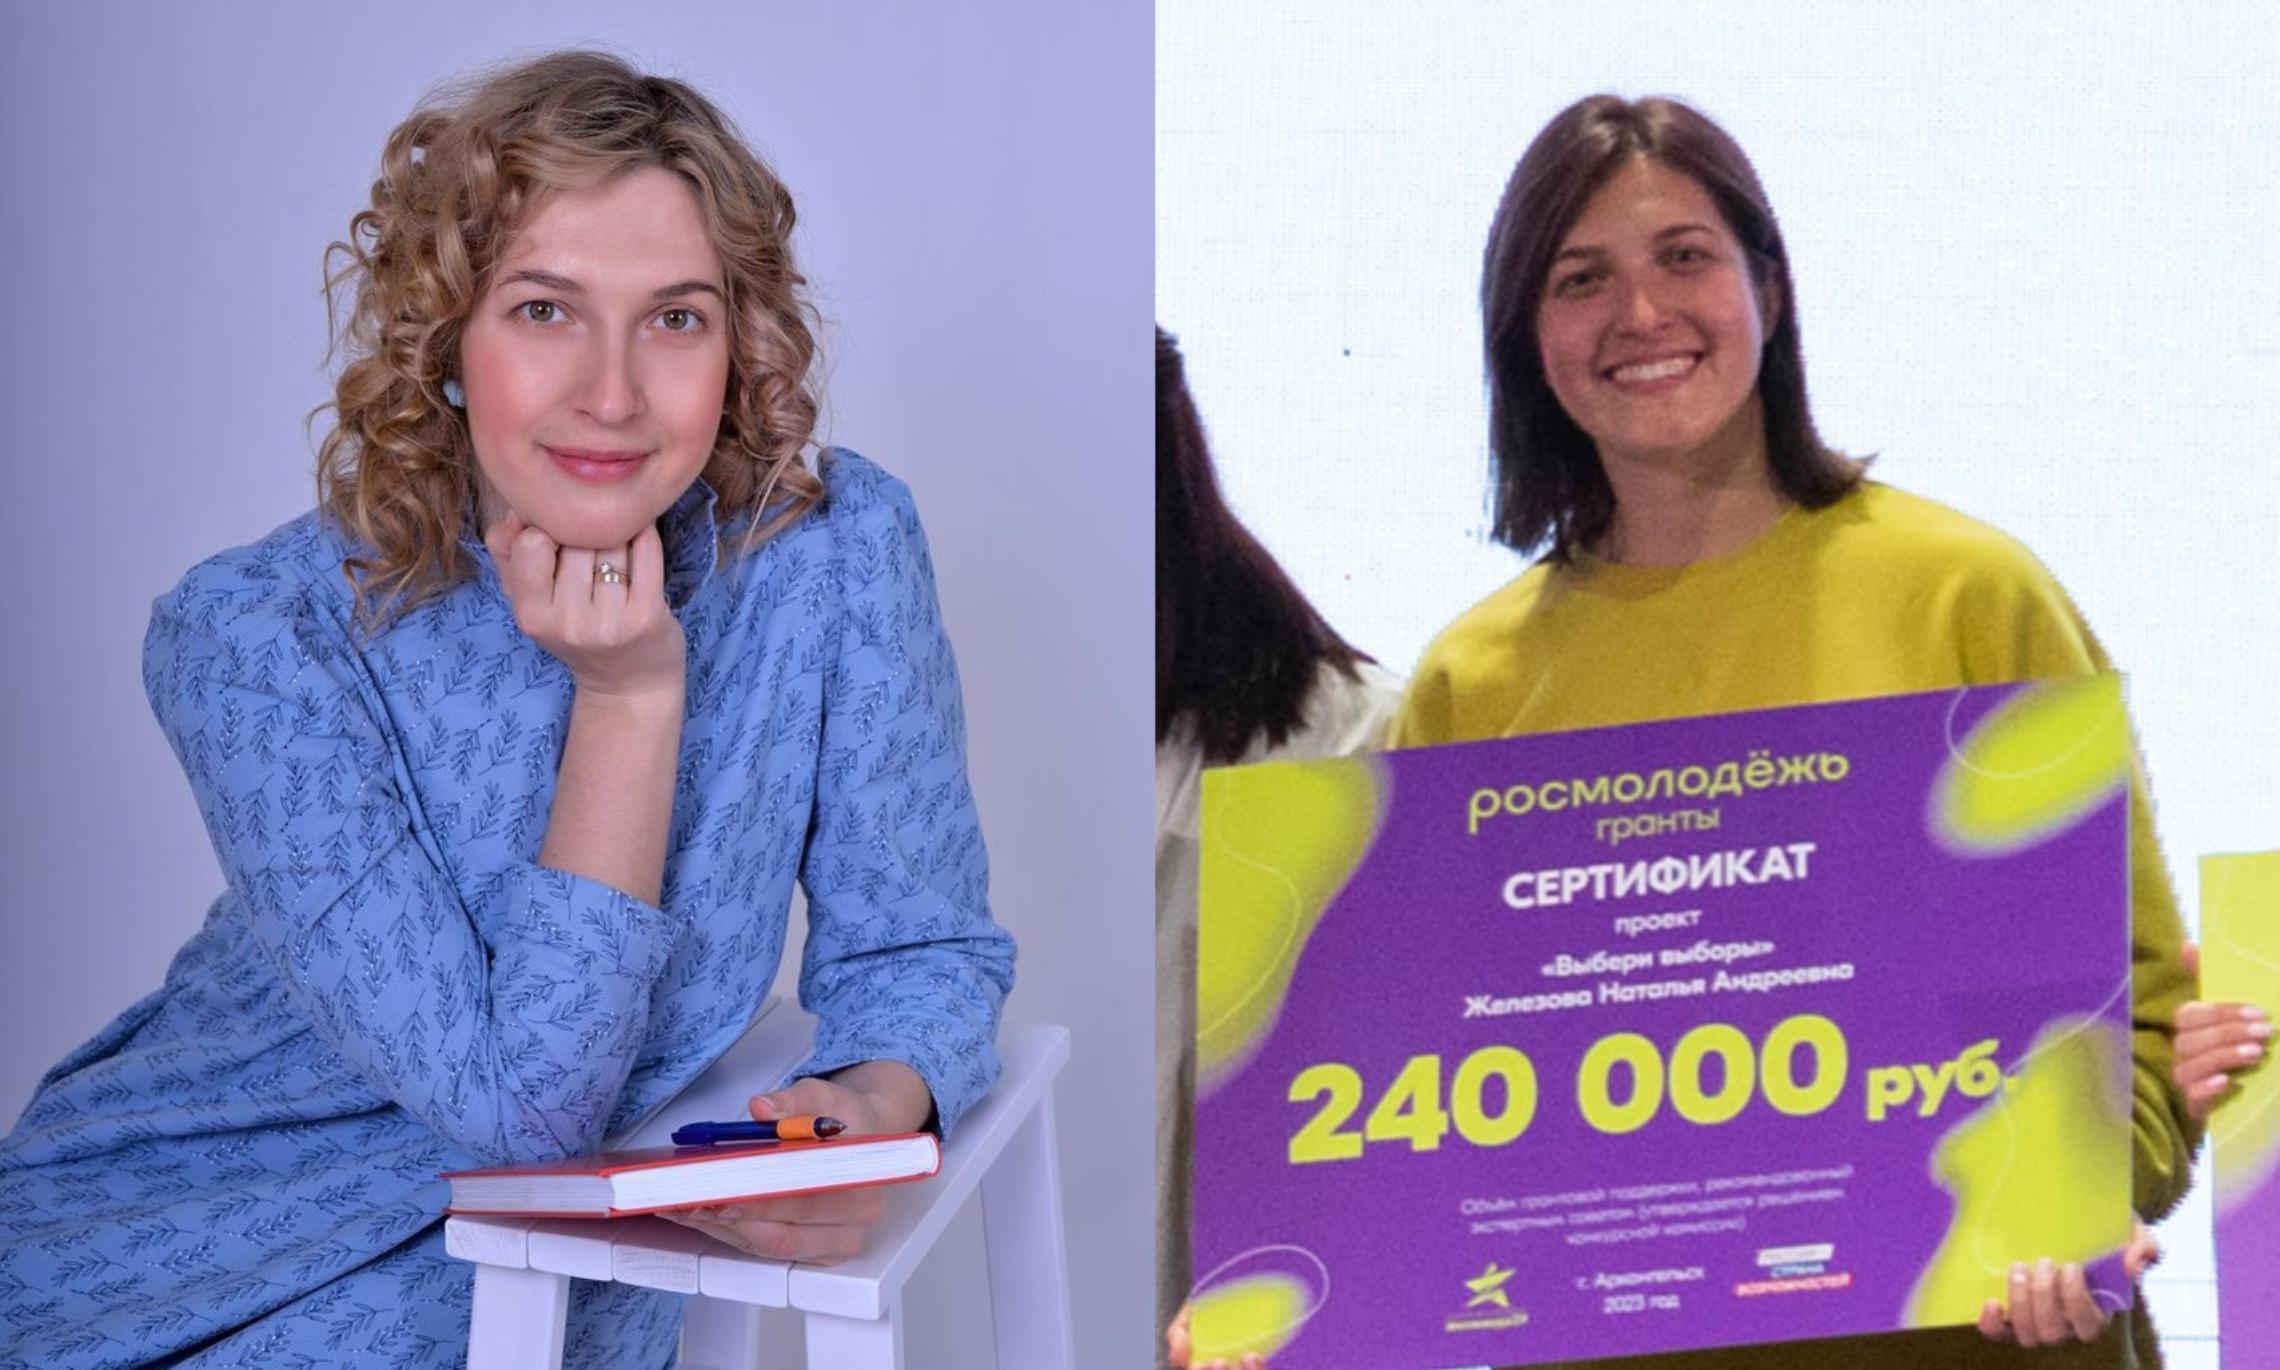 Наталья Железнова, участник конкурса грантов, депутат 